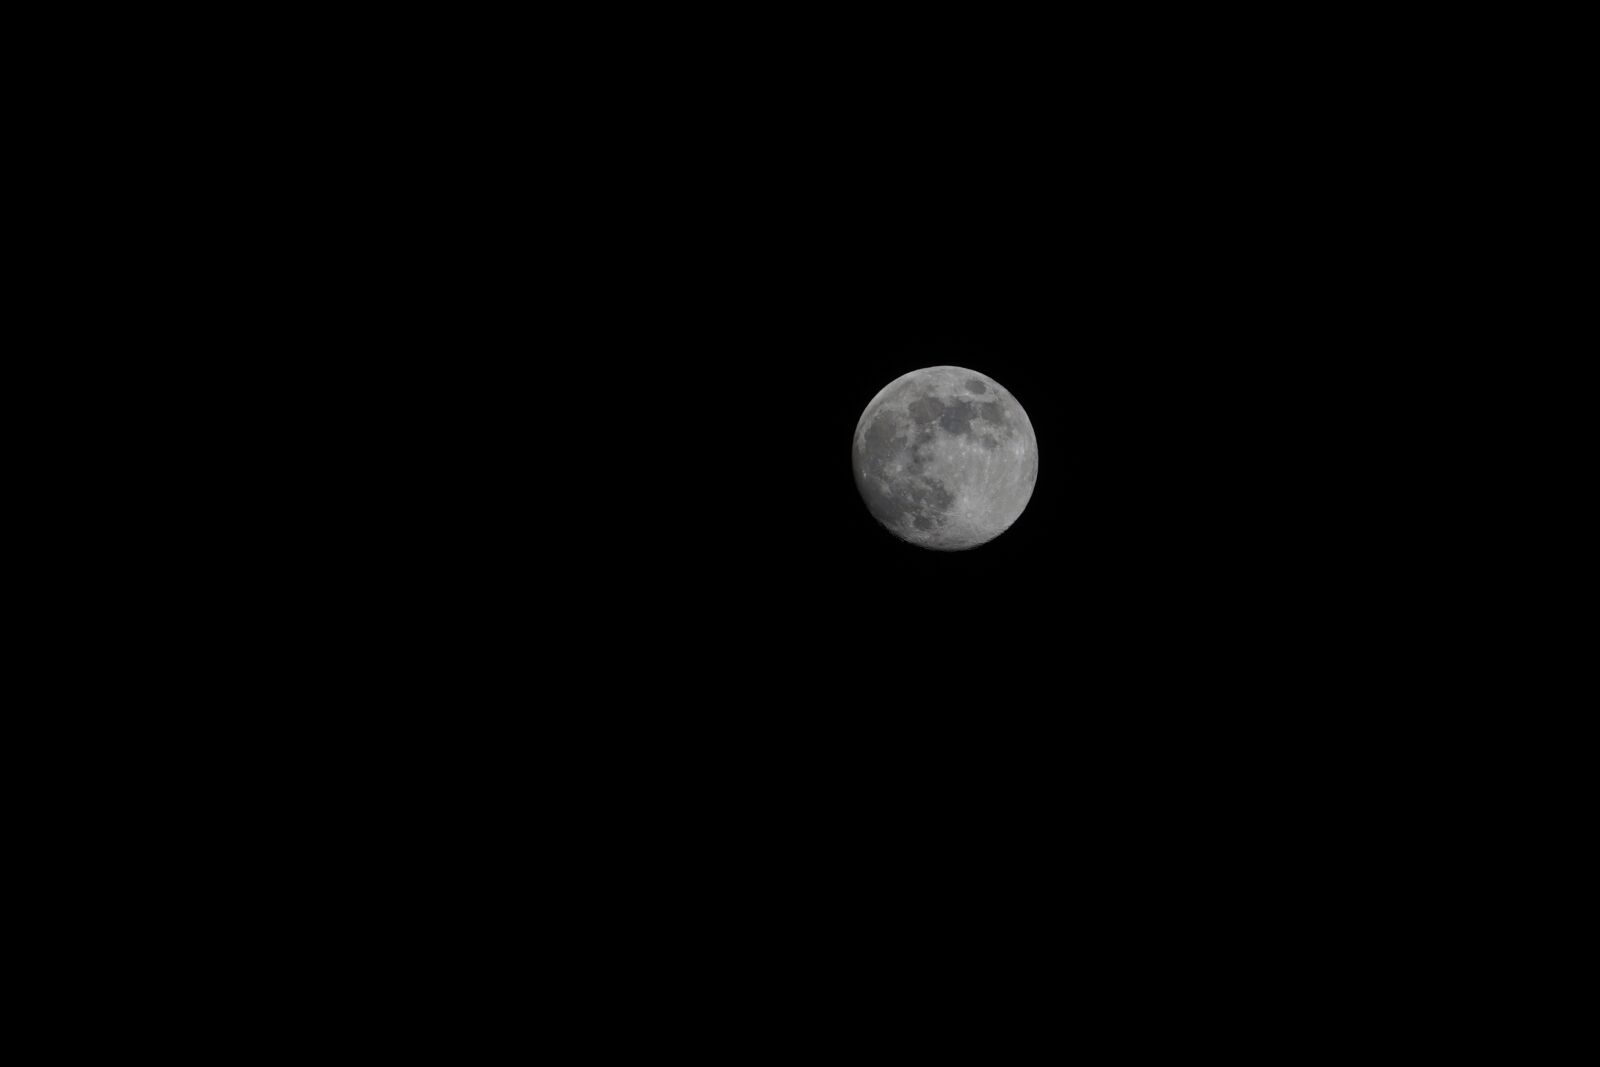 Sony a7 II + Sony FE 70-300mm F4.5-5.6 G OSS sample photo. Moon, night, moonlight photography